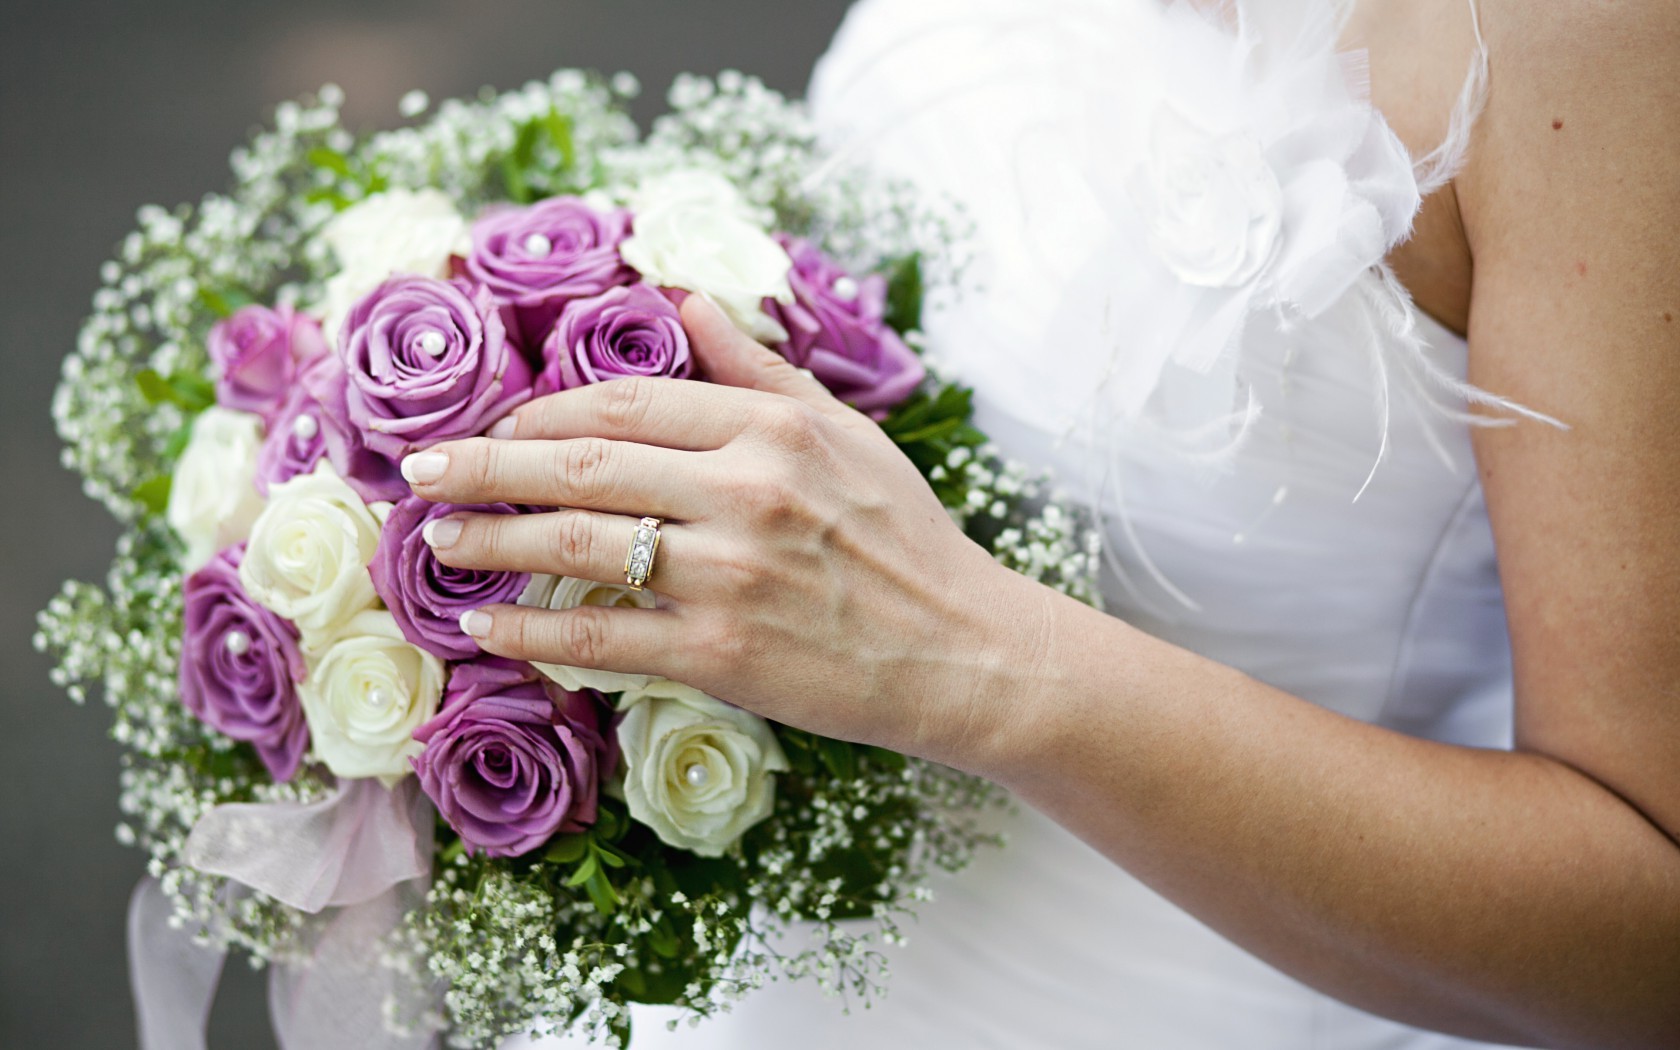  Цветы свадебный букет, кольцо, рука, розы картинка, обои рабочий стол